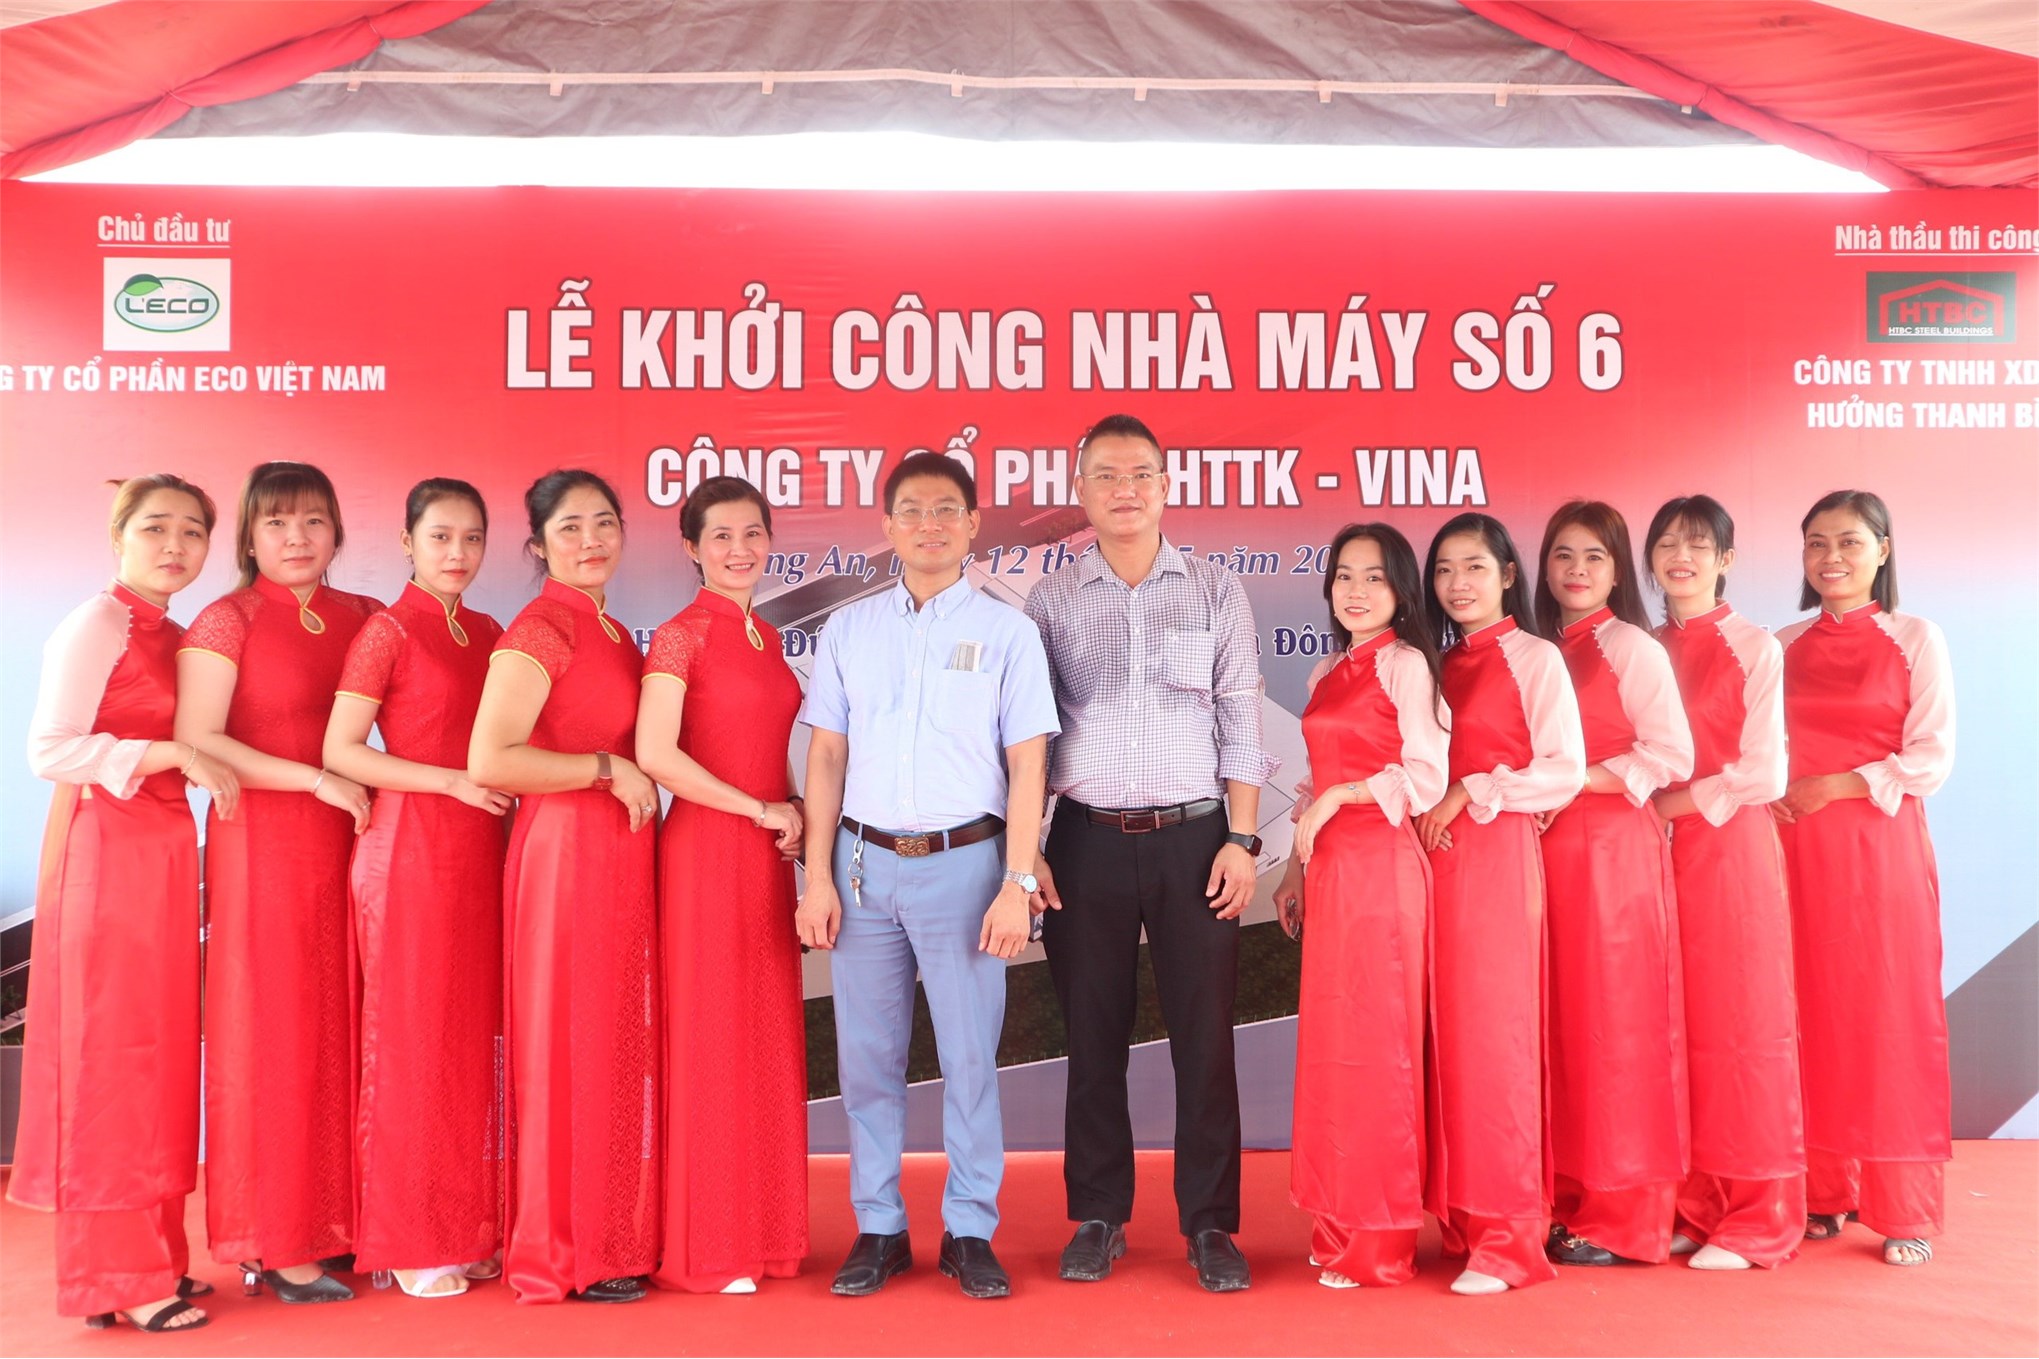 Cựu sinh viên Vũ Văn Khiên - Chủ tịch HĐQT công ty cổ phần ECO Việt Nam